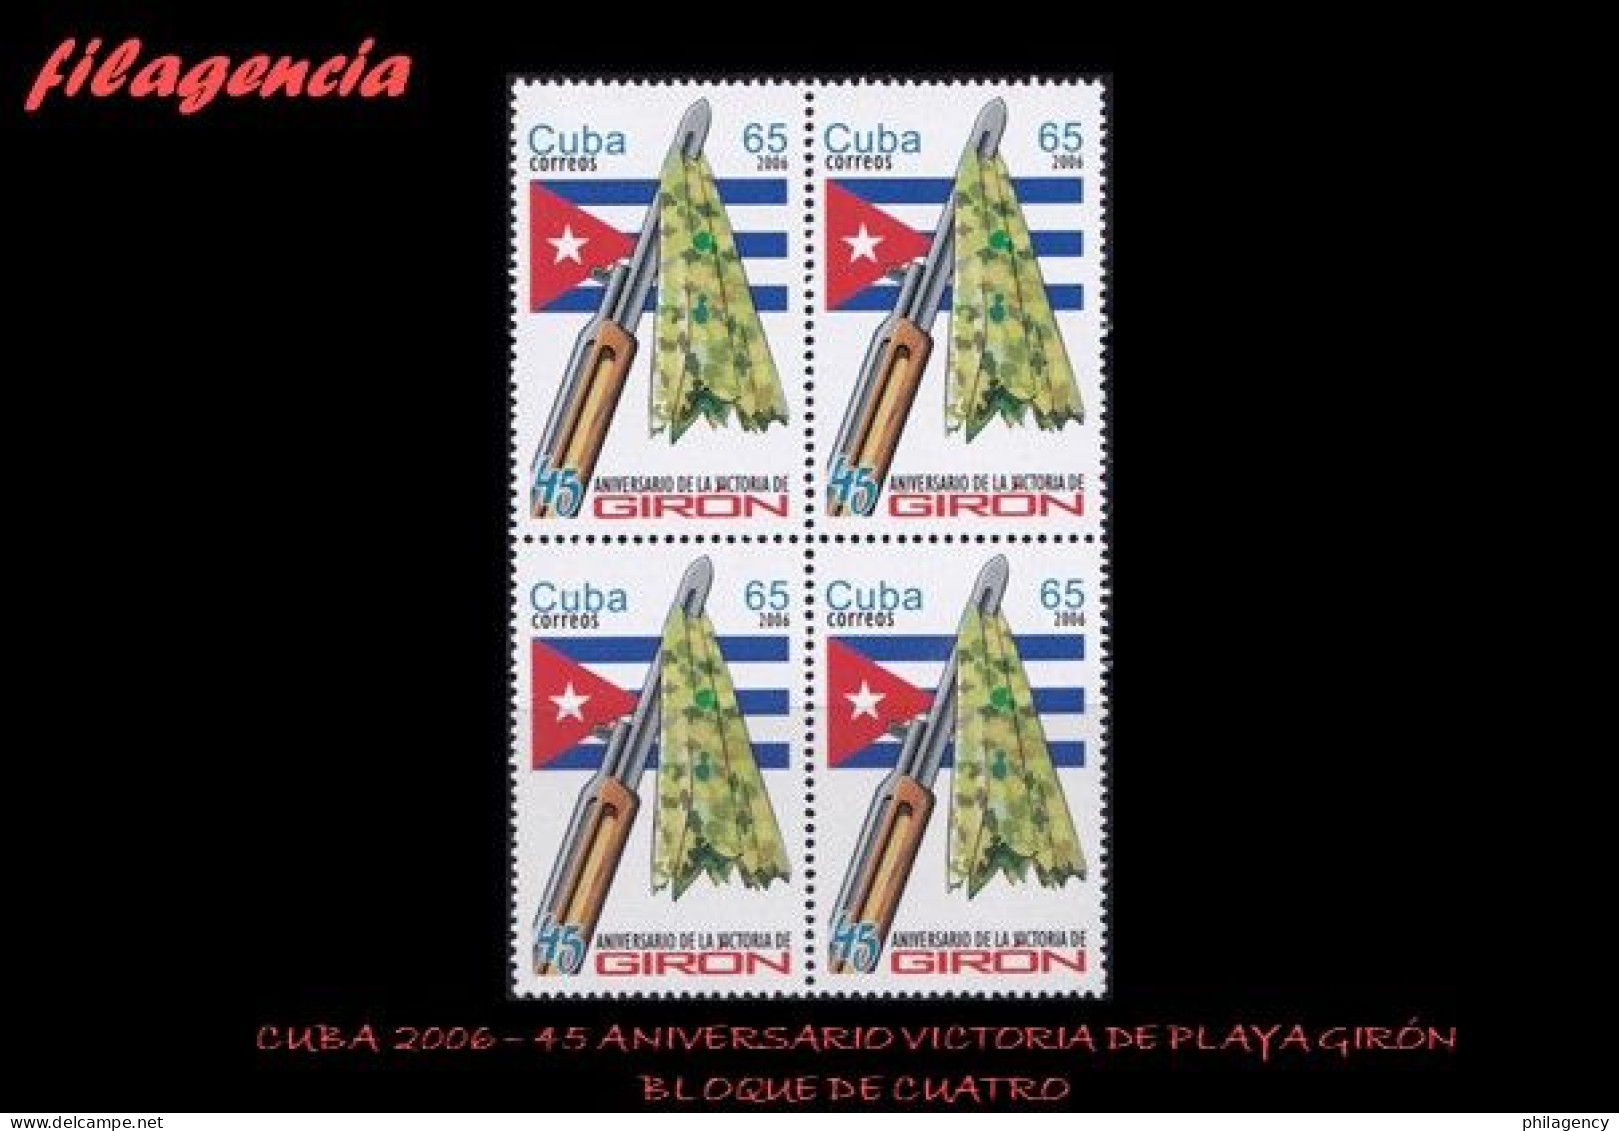 CUBA. BLOQUES DE CUATRO. 2006-09 45 ANIVERSARIO DE LA VICTORIA DE PLAYA GIRÓN - Nuovi